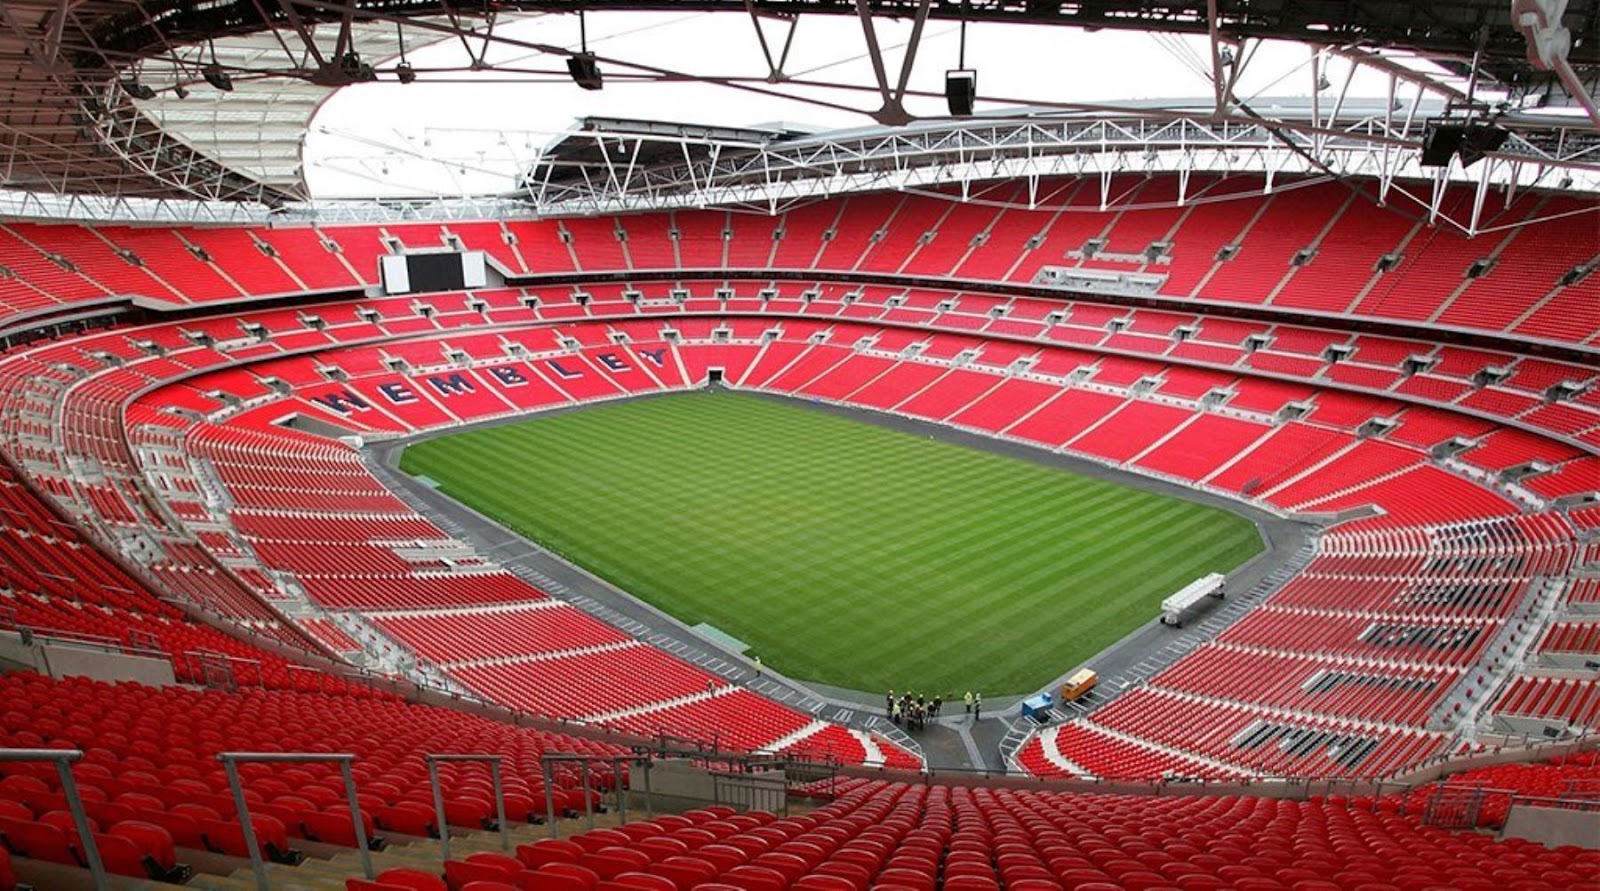 El Estadio Wembley desde adentro, con su cancha verde y sus gradas rojas